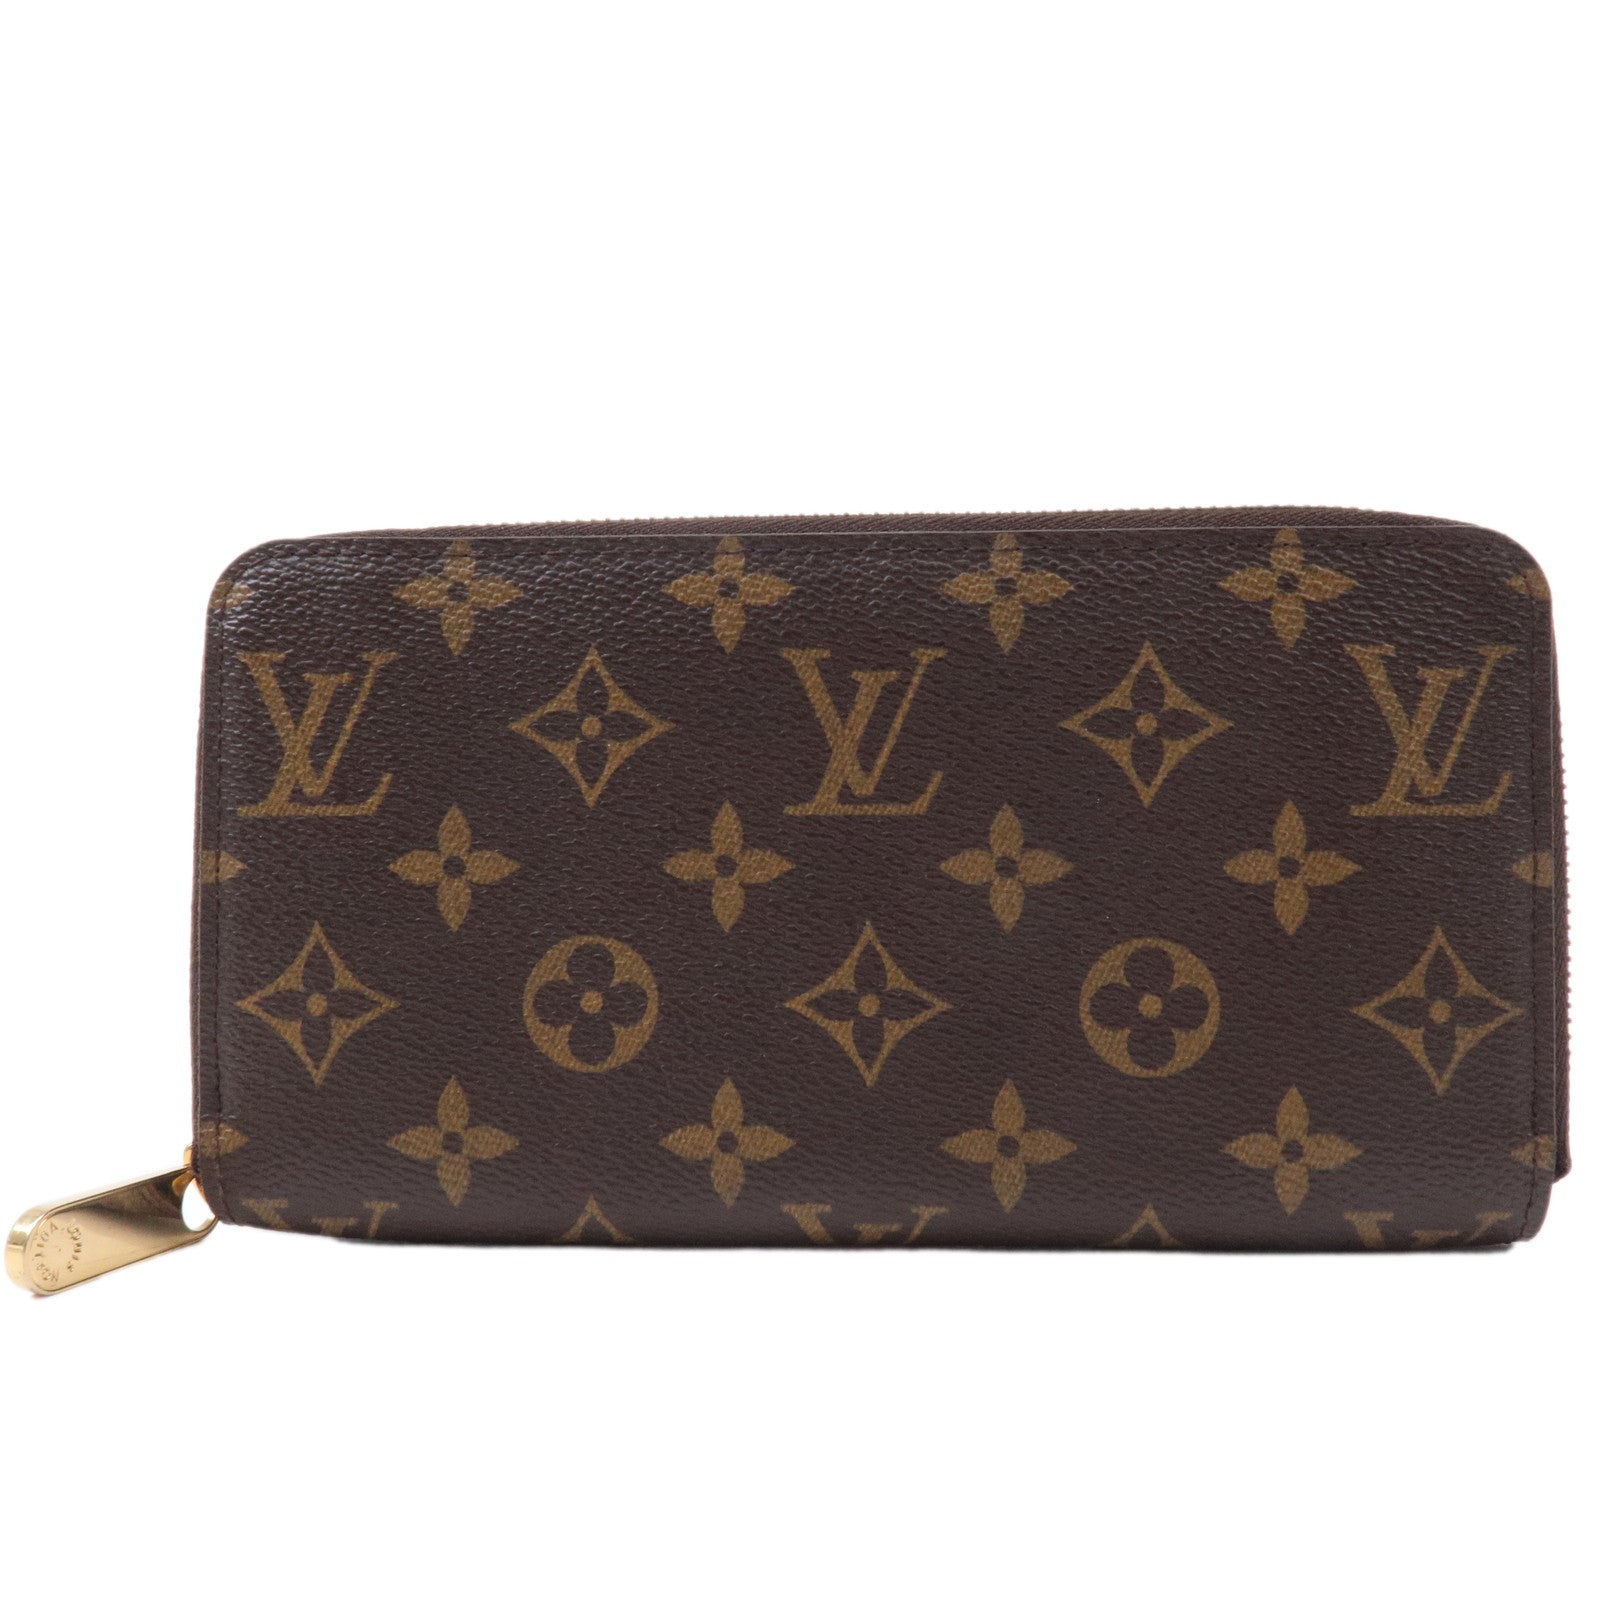 LOUIS VUITTON M60017 Zip Around Zippy wallet purse Brown Monogram